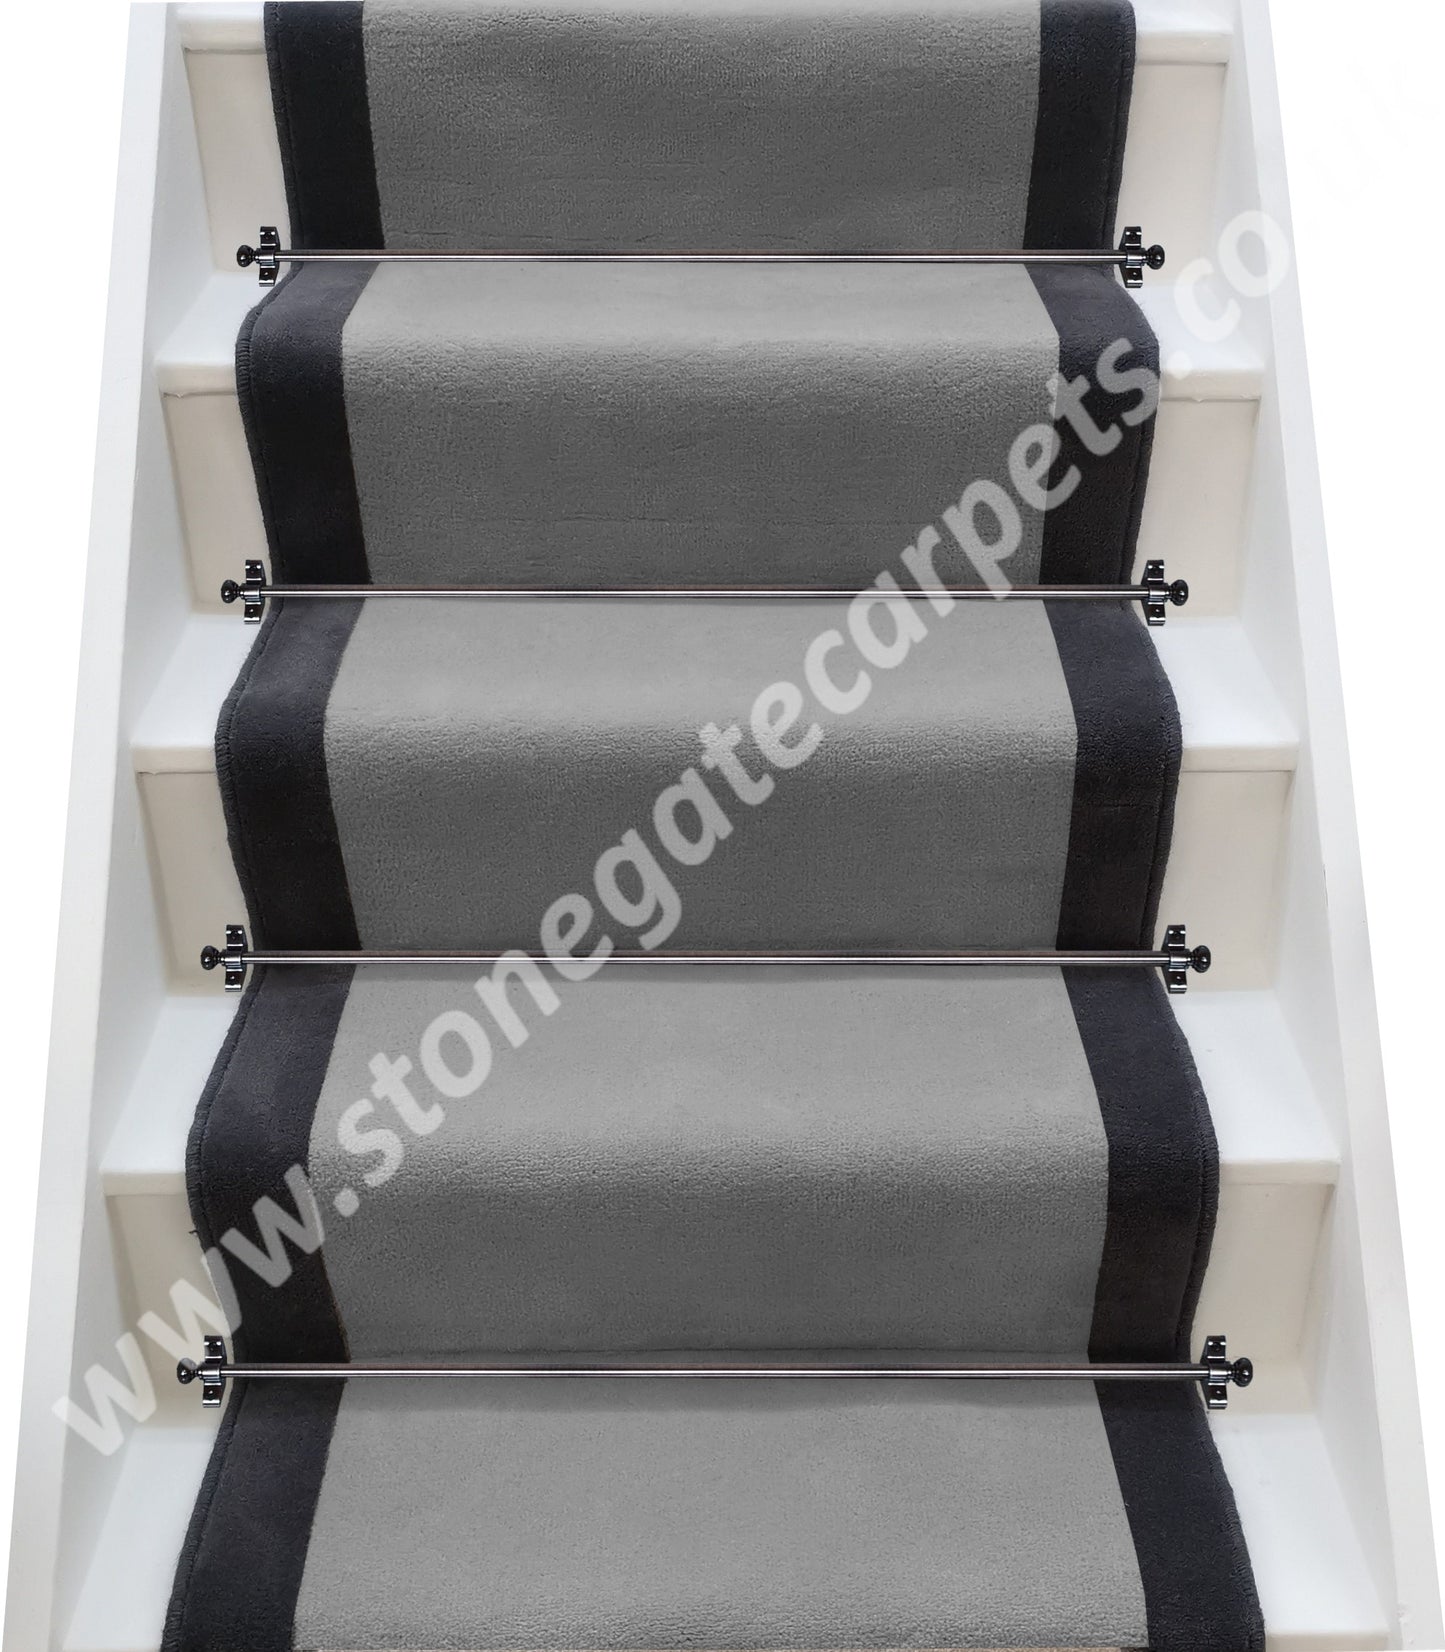 Ulster Carpets Ulster Velvet Stove & Charcoal Stair Runner